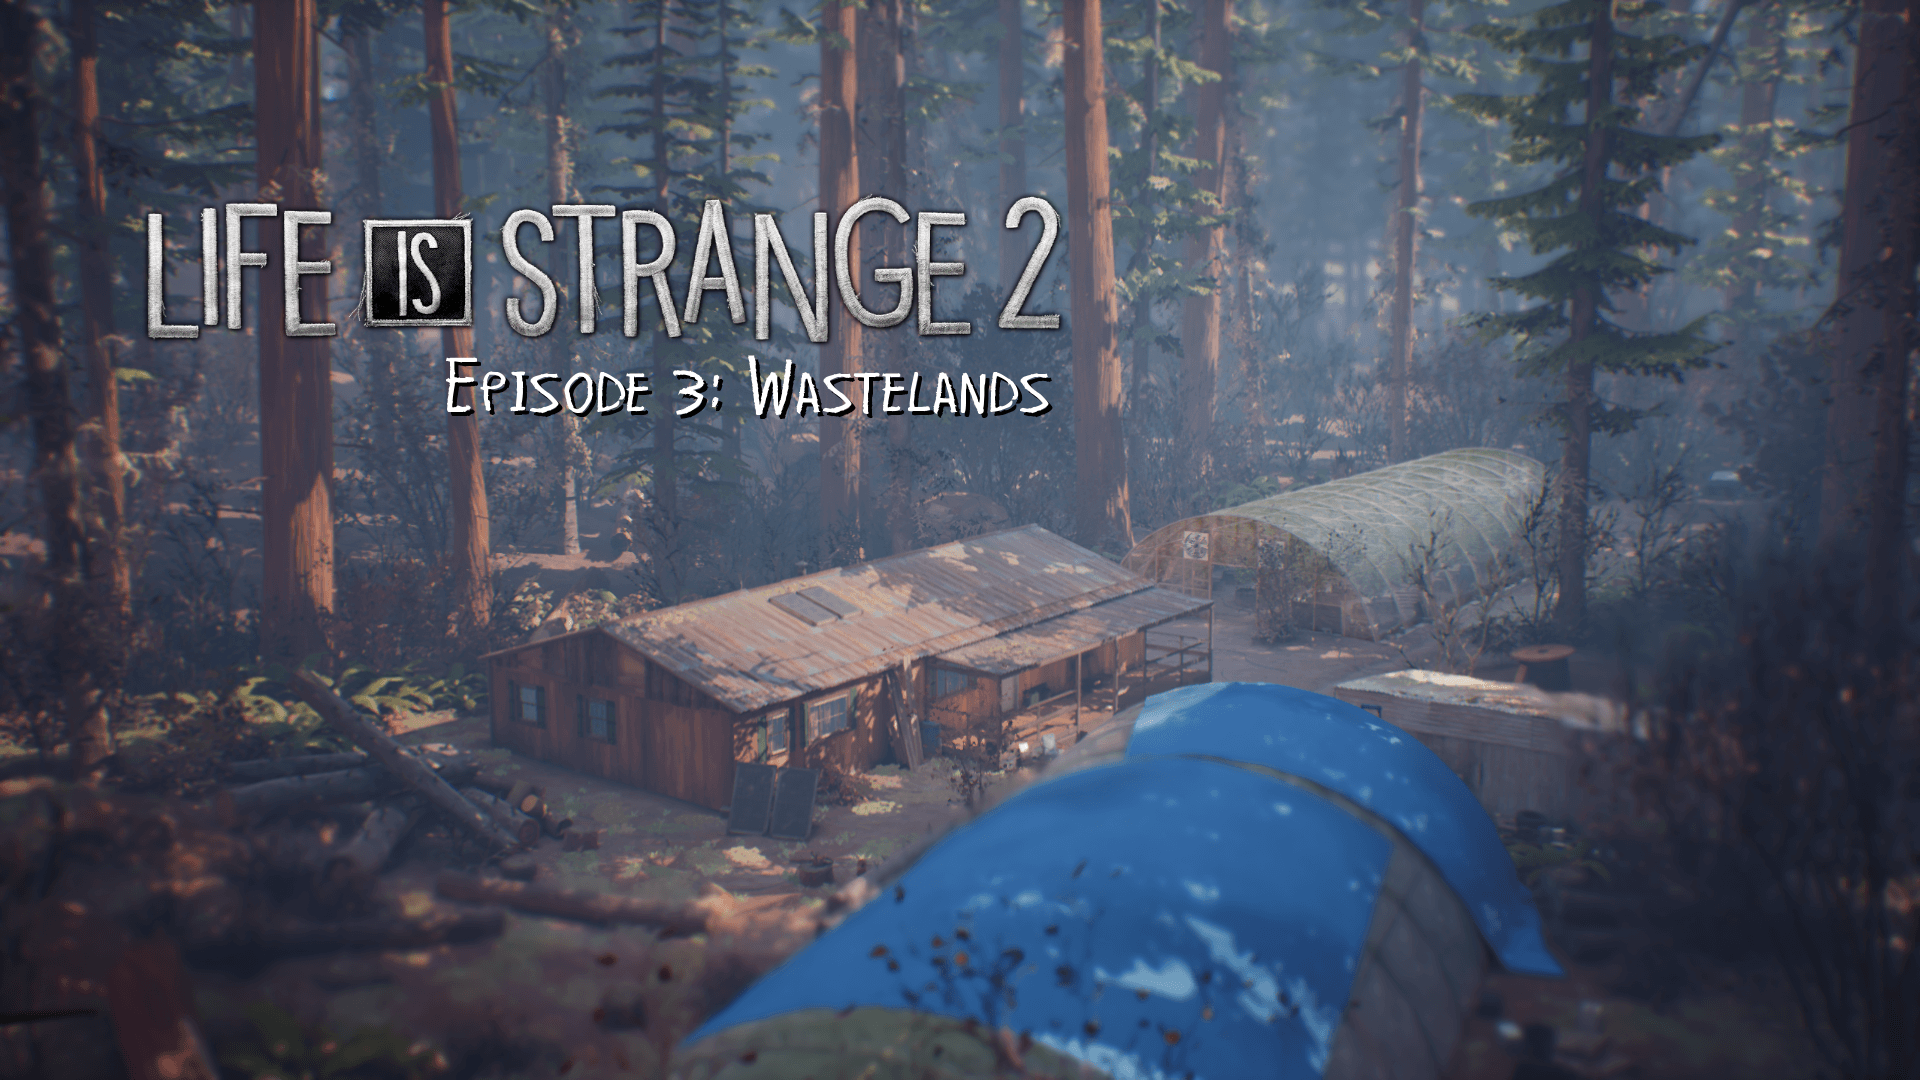 Episode 3: Wastelands. Life is Strange